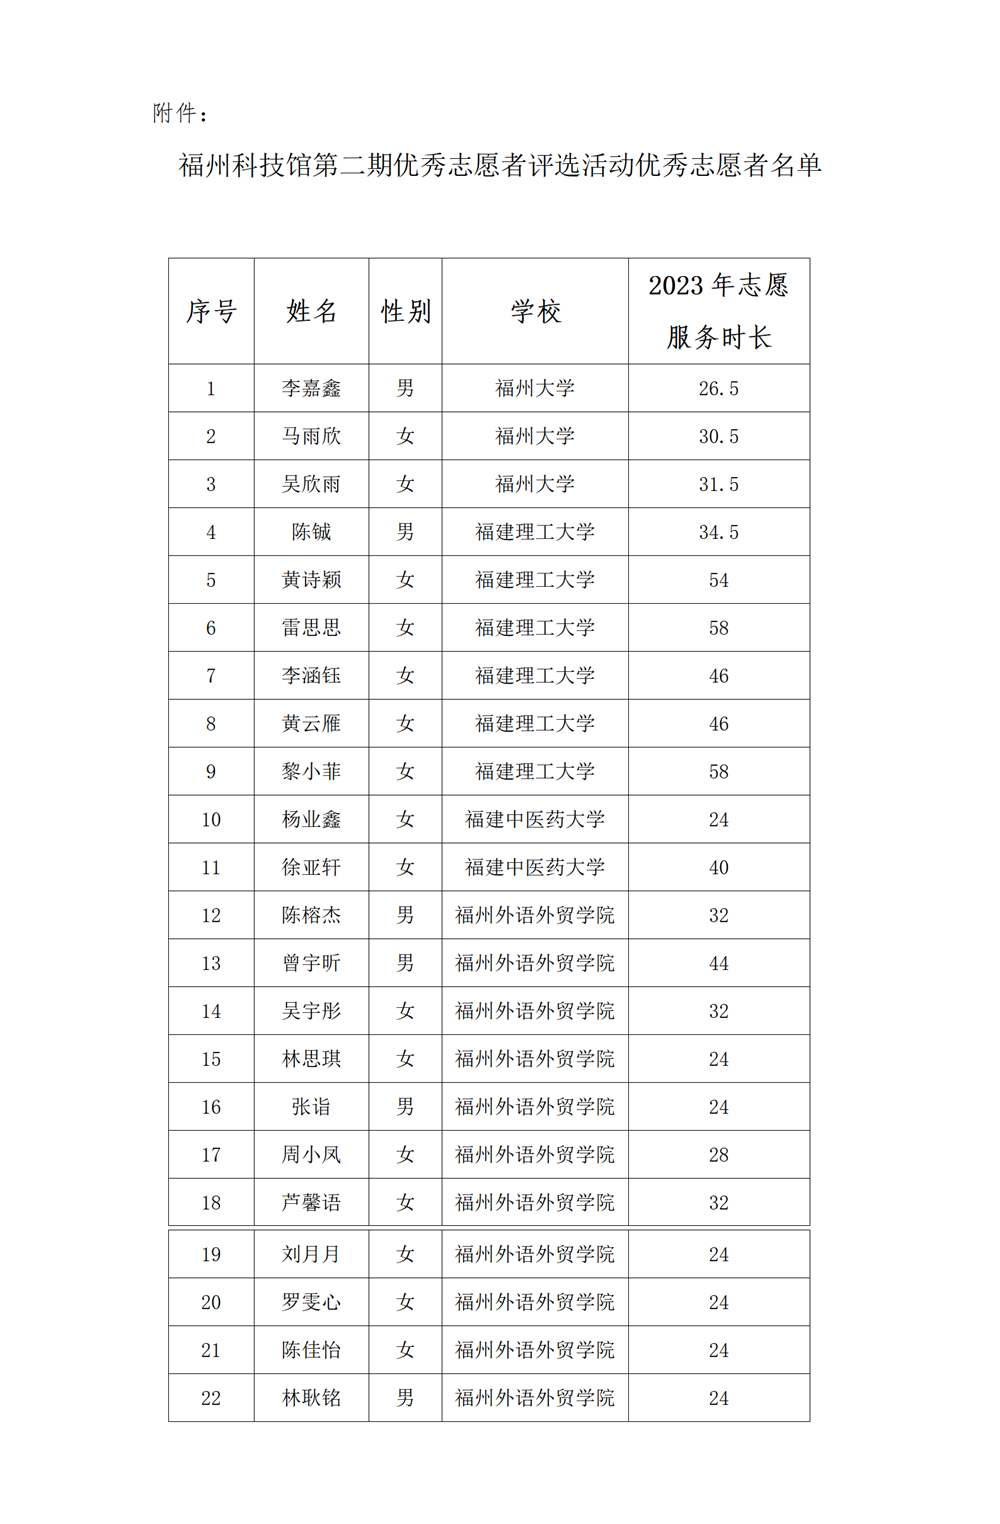 福州科技馆2023年第二期优秀志愿者评选活动优秀志愿者名单公示